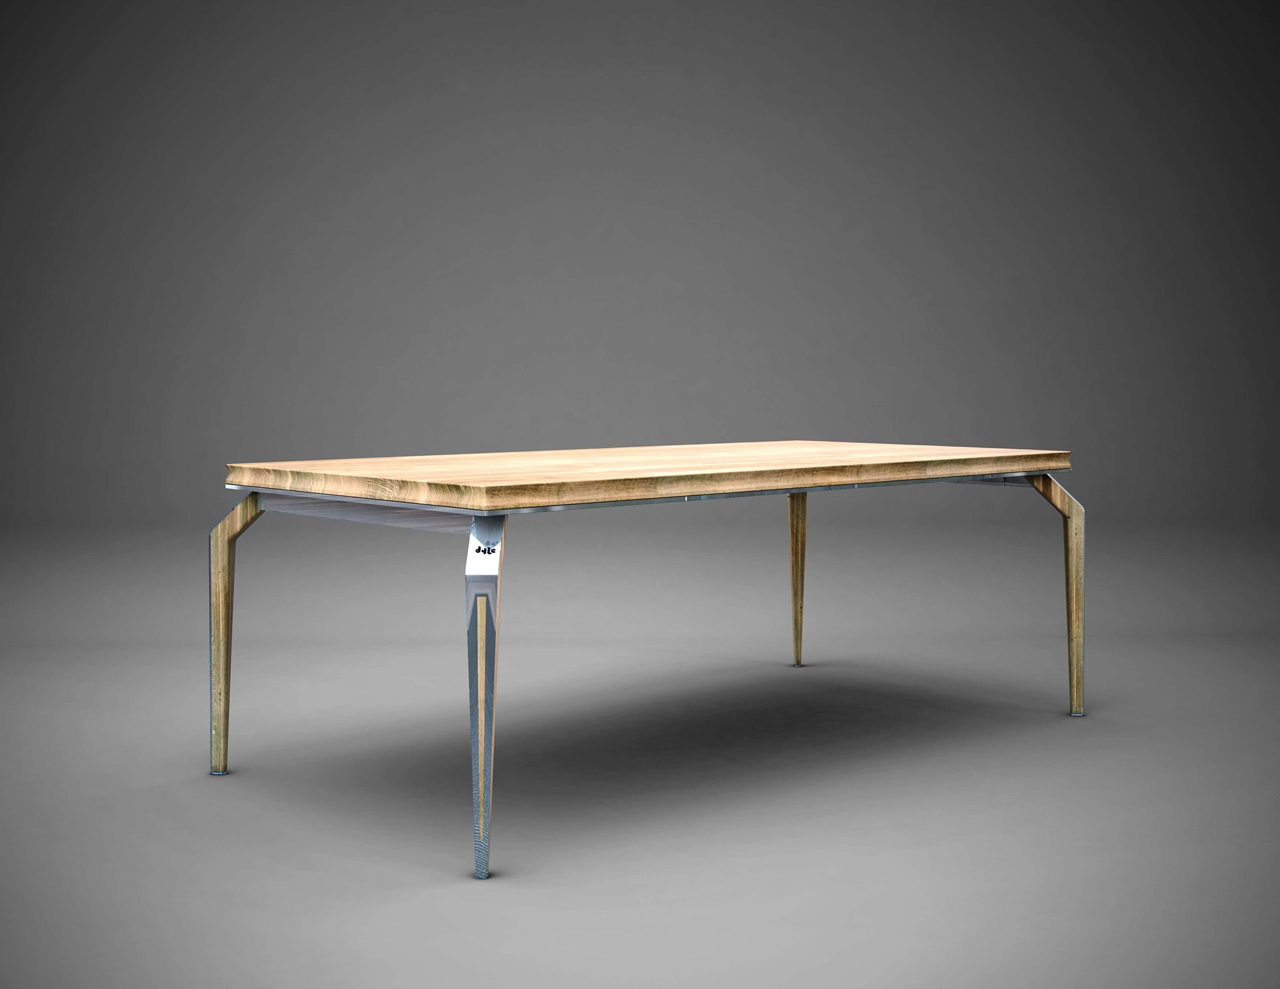 Functional minimalist table